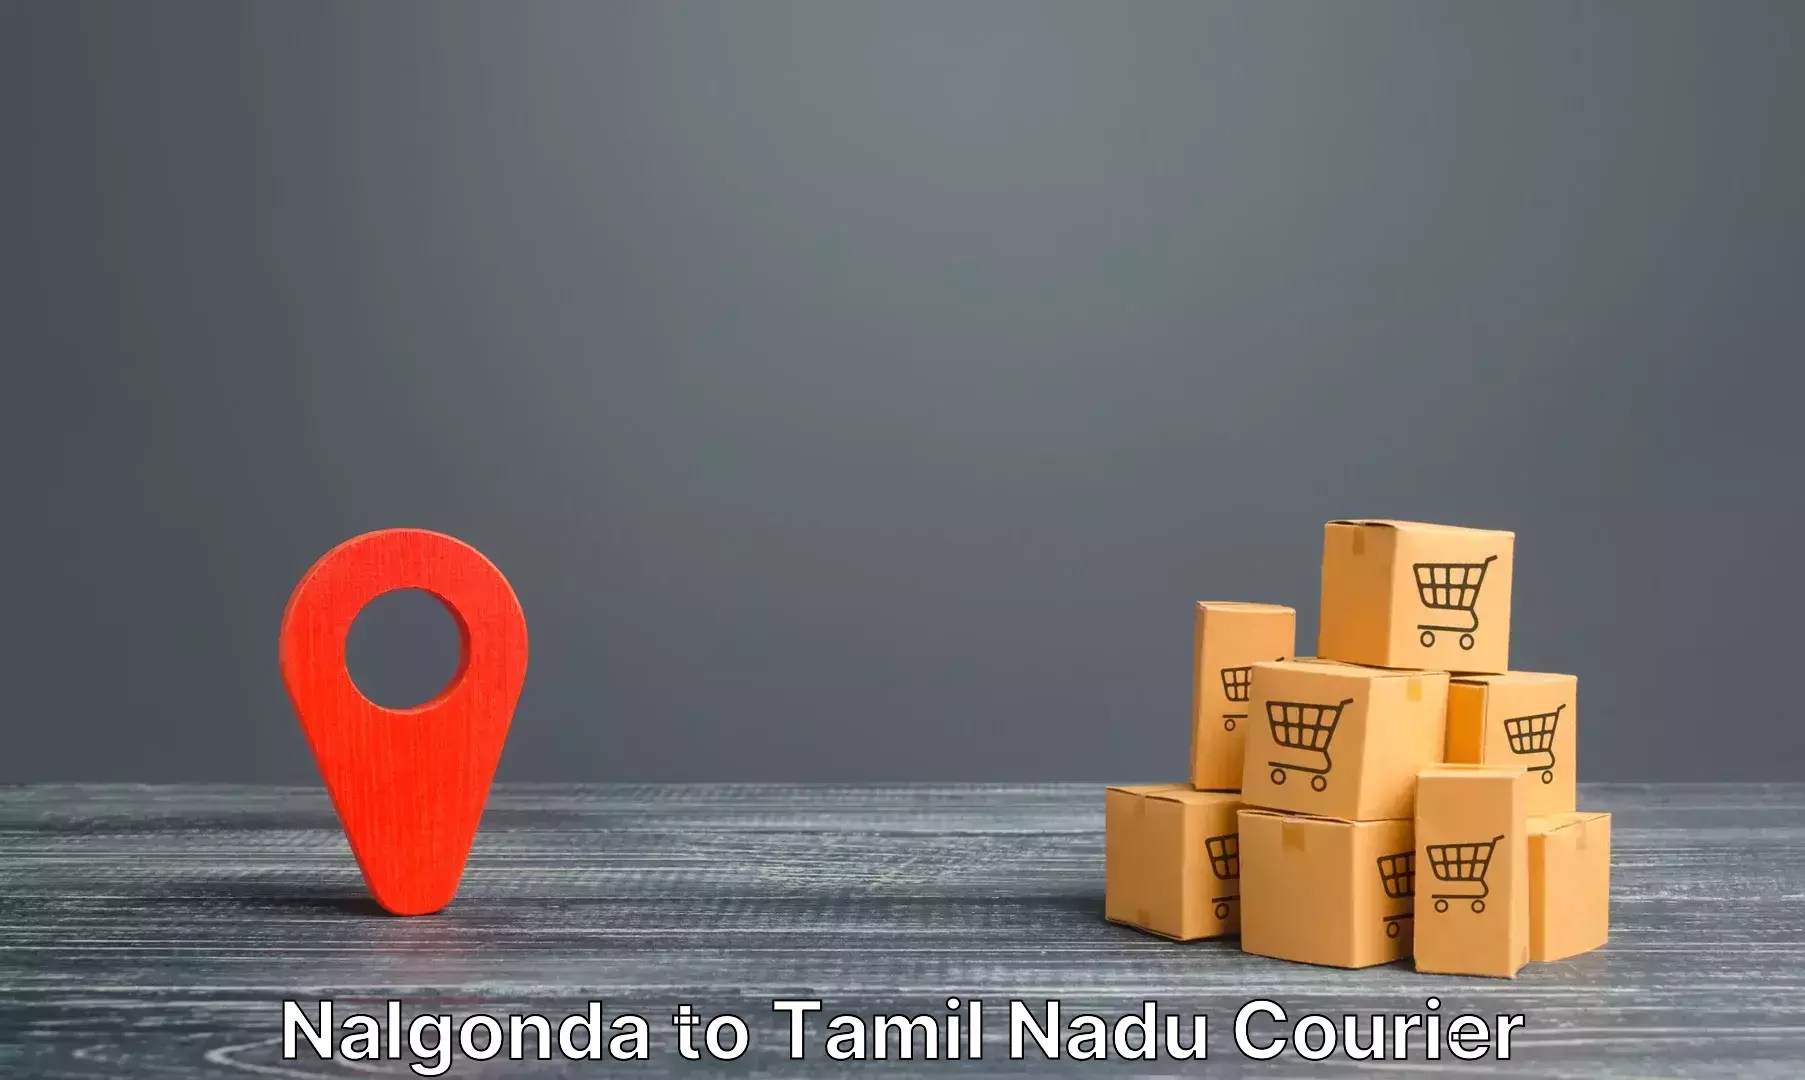 Luggage shipment tracking Nalgonda to Velur